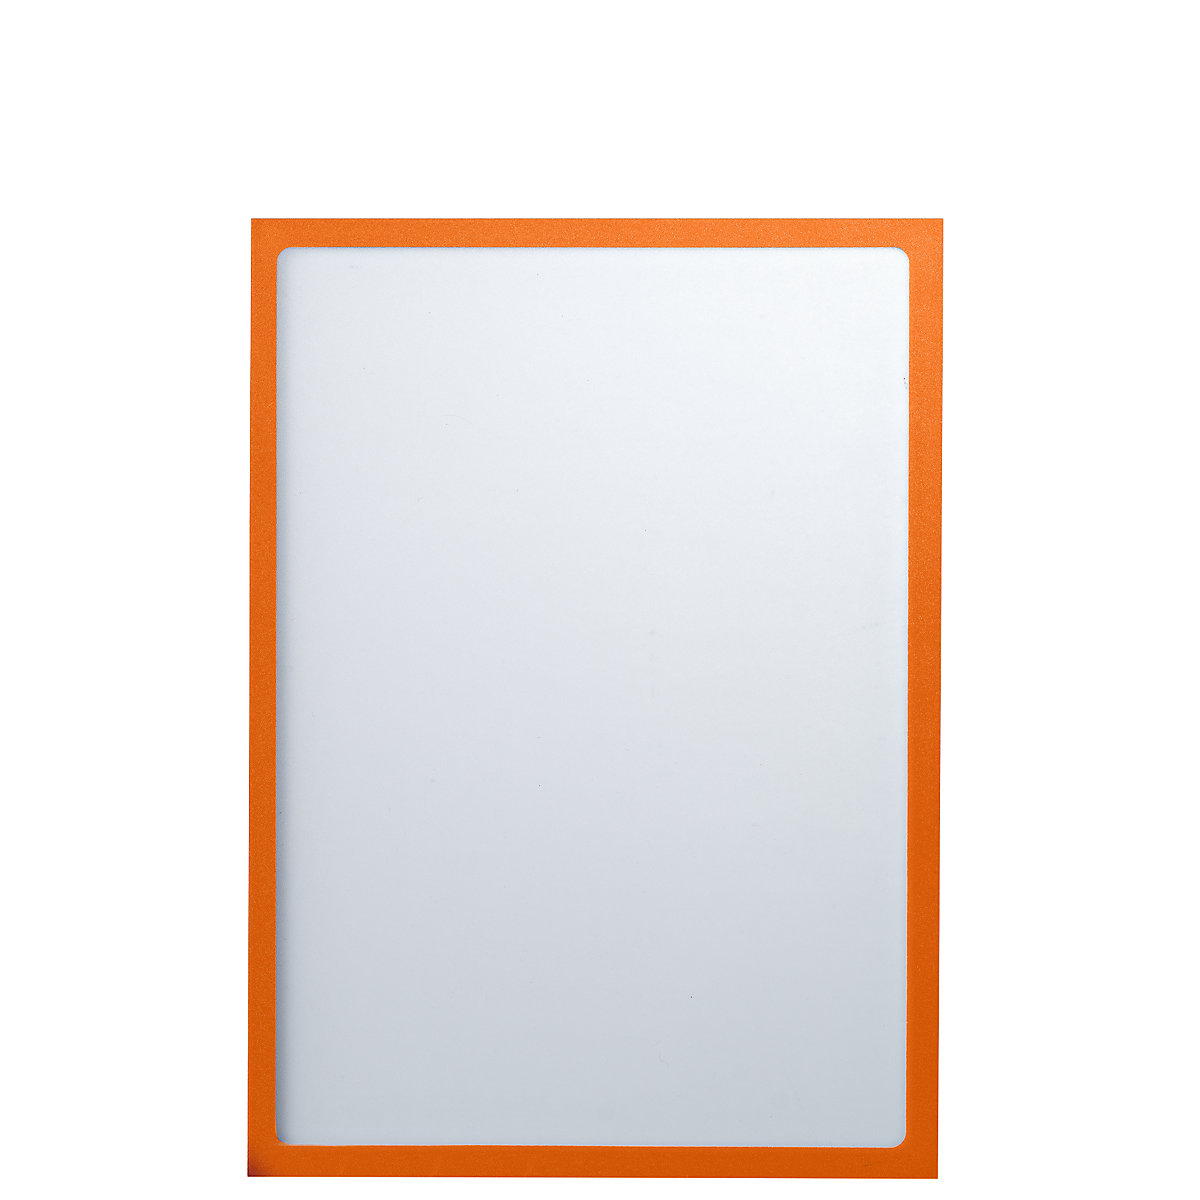 EUROKRAFTbasic – Pochette info magnétique, format A4, l x h 225 x 312 mm, cadre orange, lot de 30